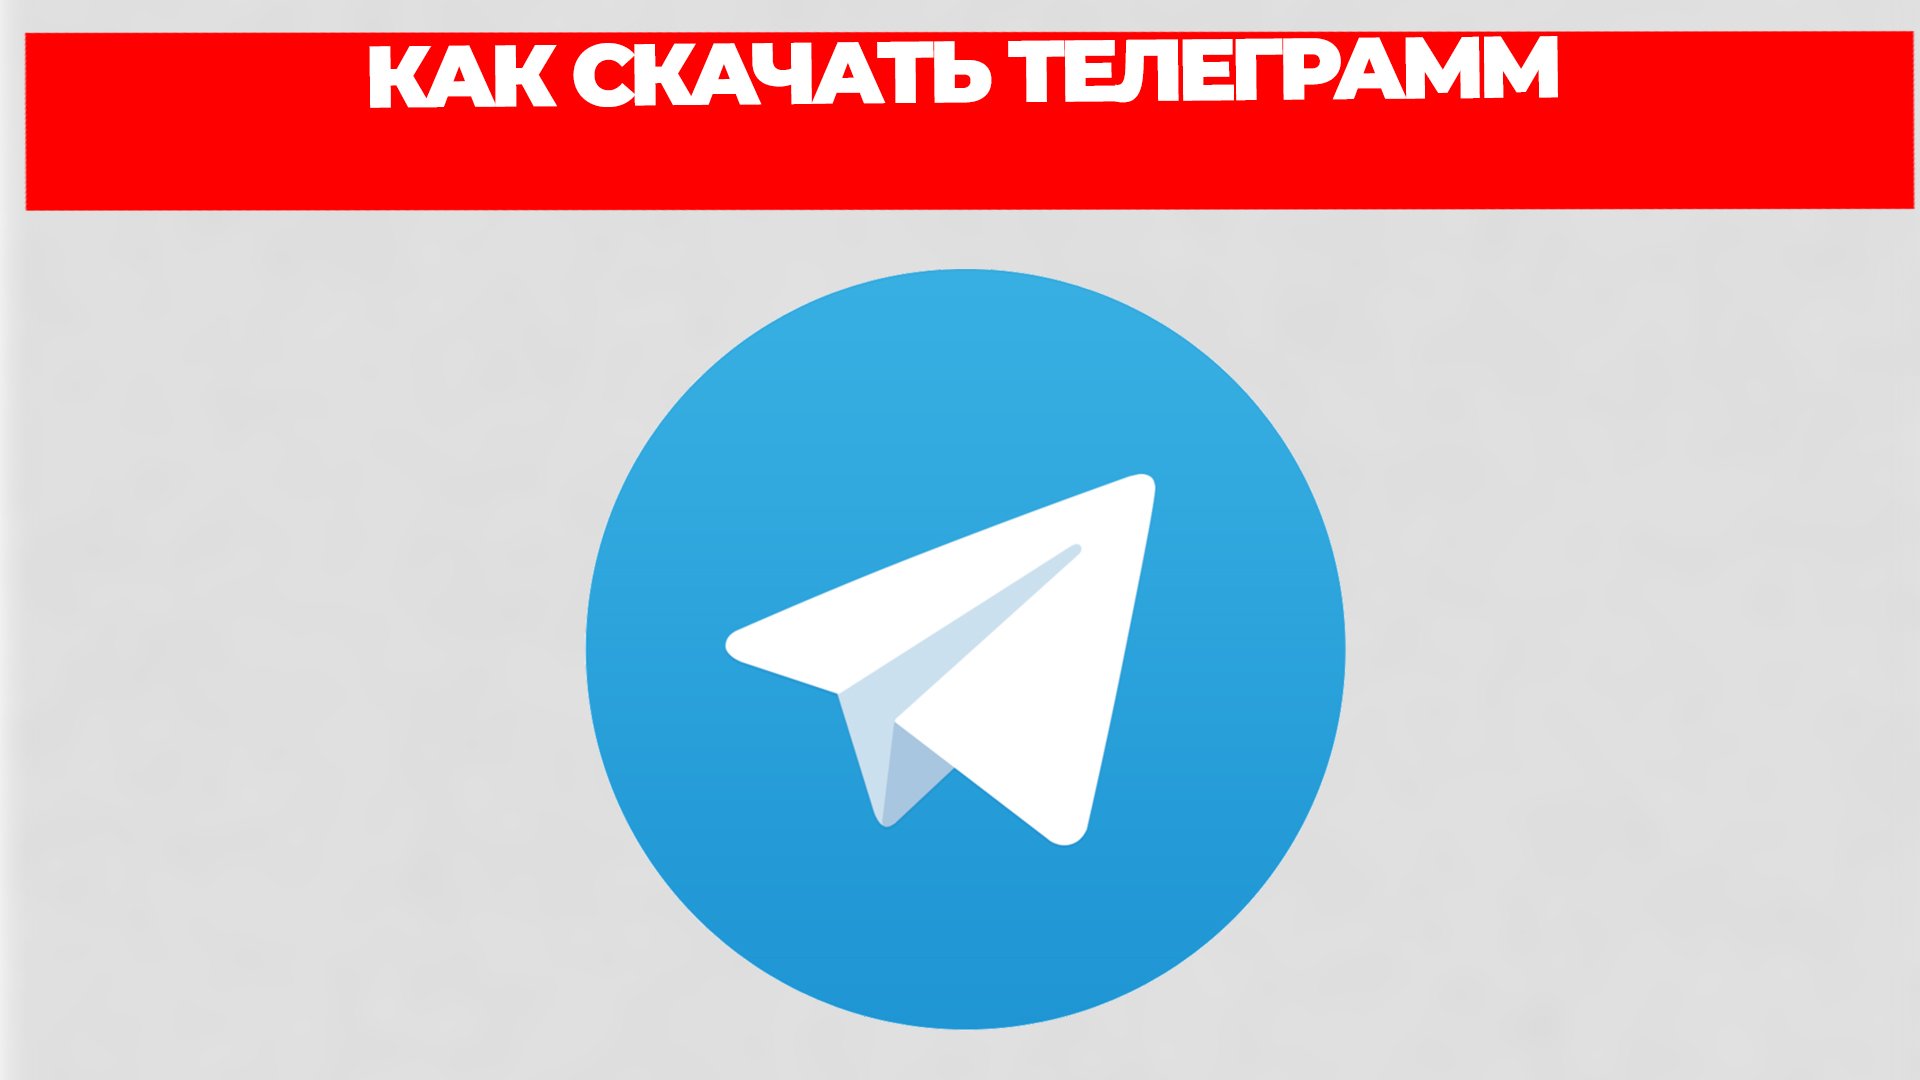 Телеграмм скачать бесплатно на телефон на русском с официального сайта языке без регистрации фото 117